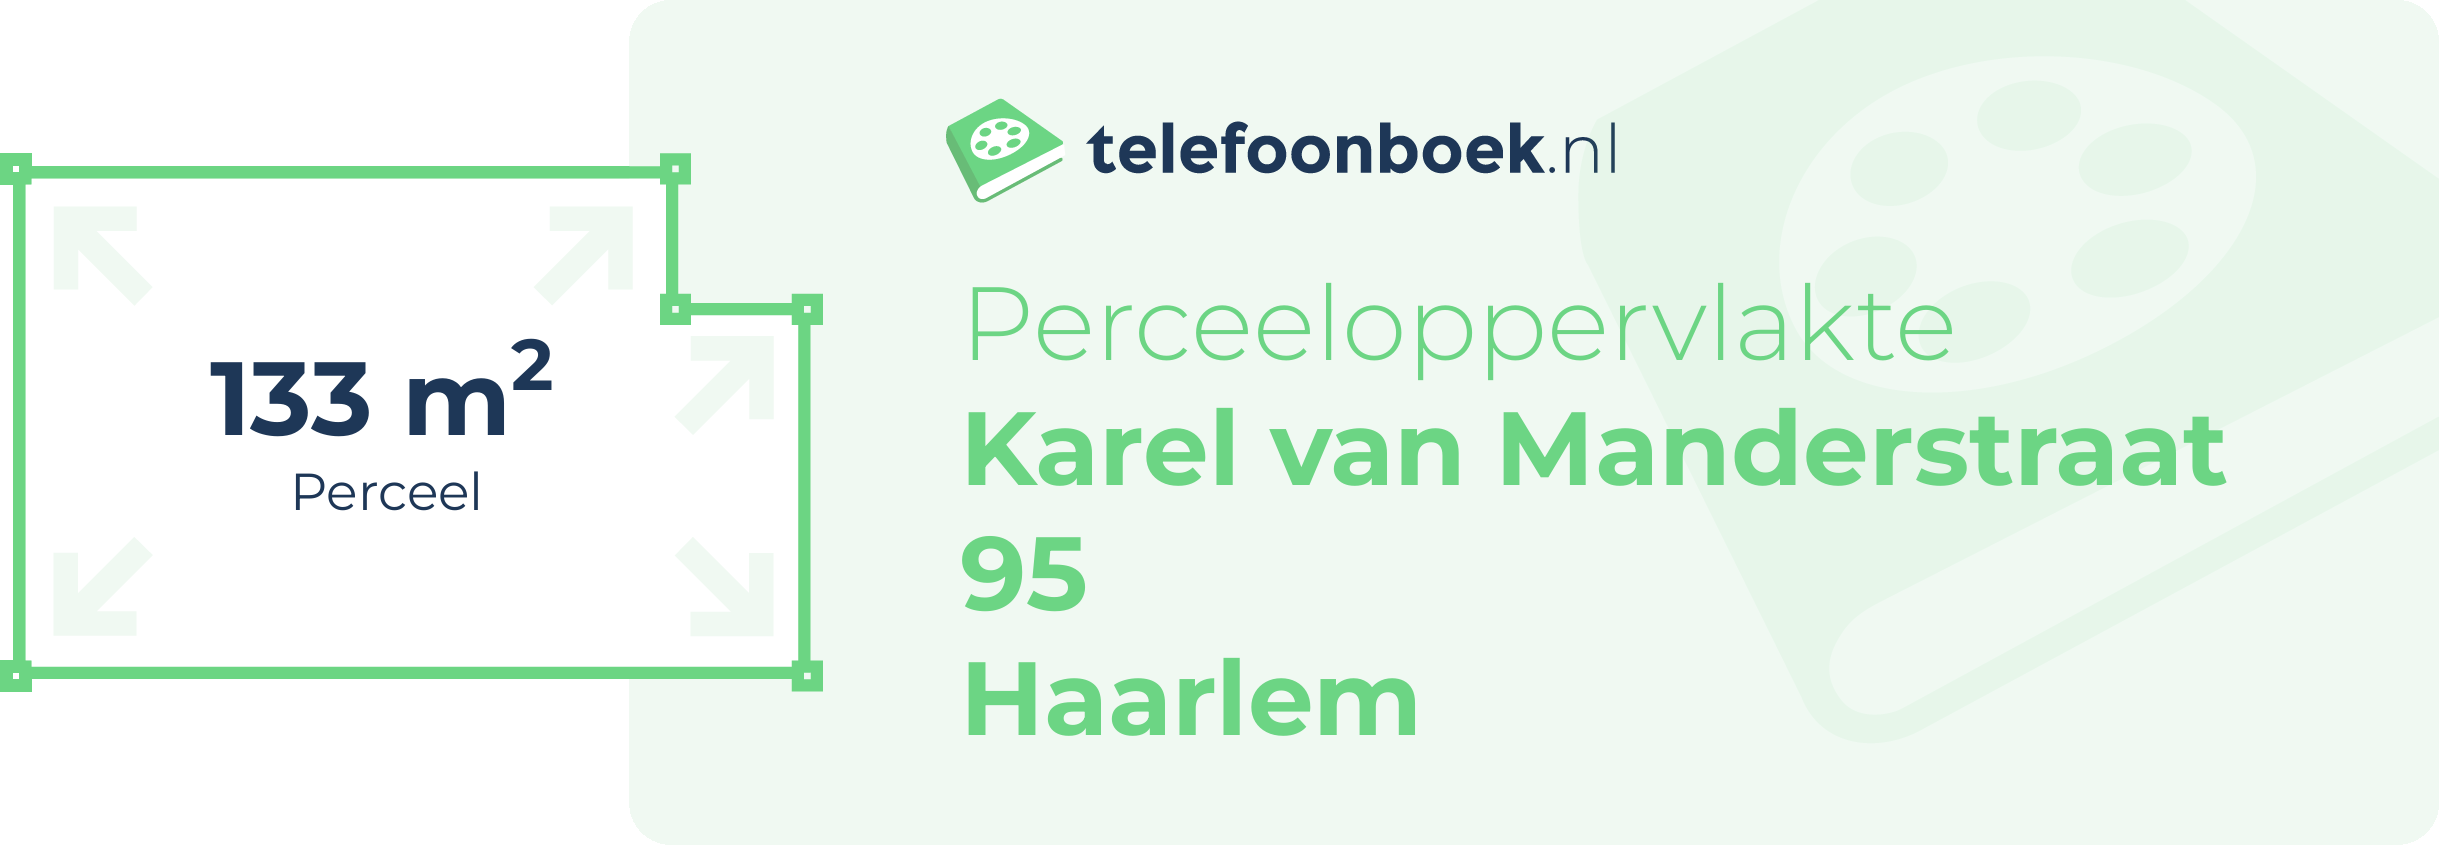 Perceeloppervlakte Karel Van Manderstraat 95 Haarlem